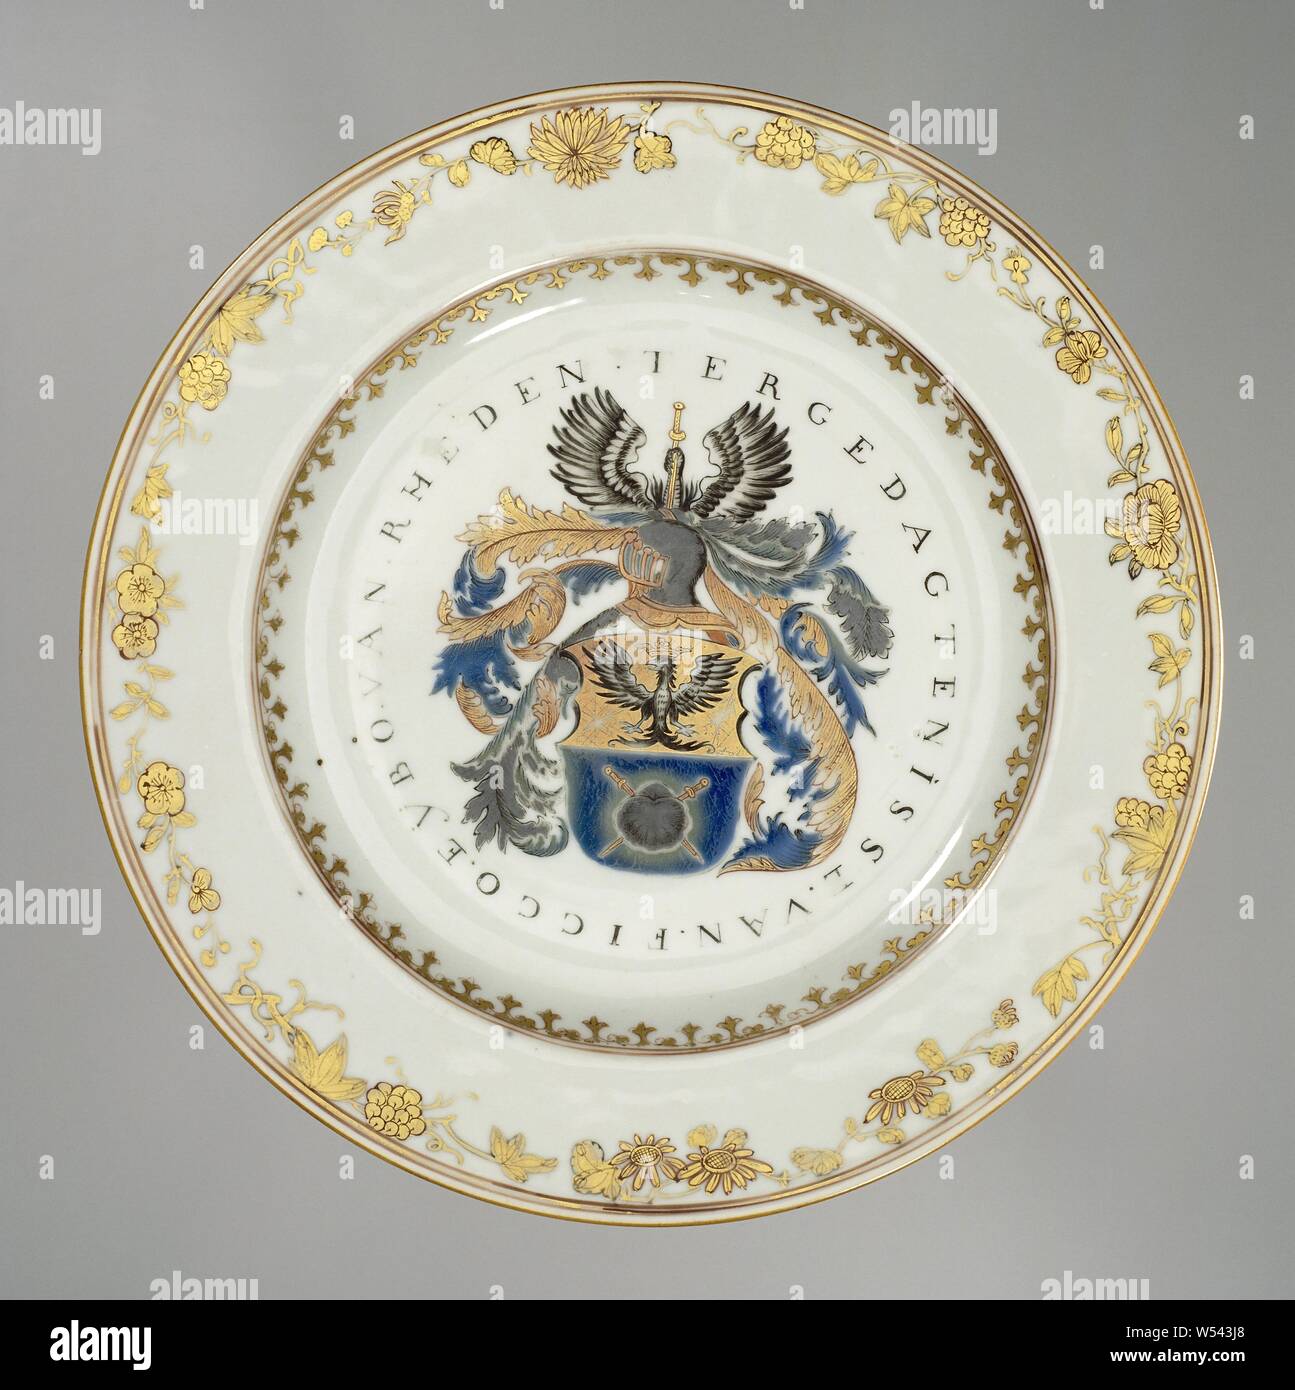 La plaque avec les armoiries de la famille Van Rheden, assiette de  porcelaine peinte sur l'émail en bleu, rouge, noir et or. Sur le plateau  les armoiries de la famille Van Rheden.